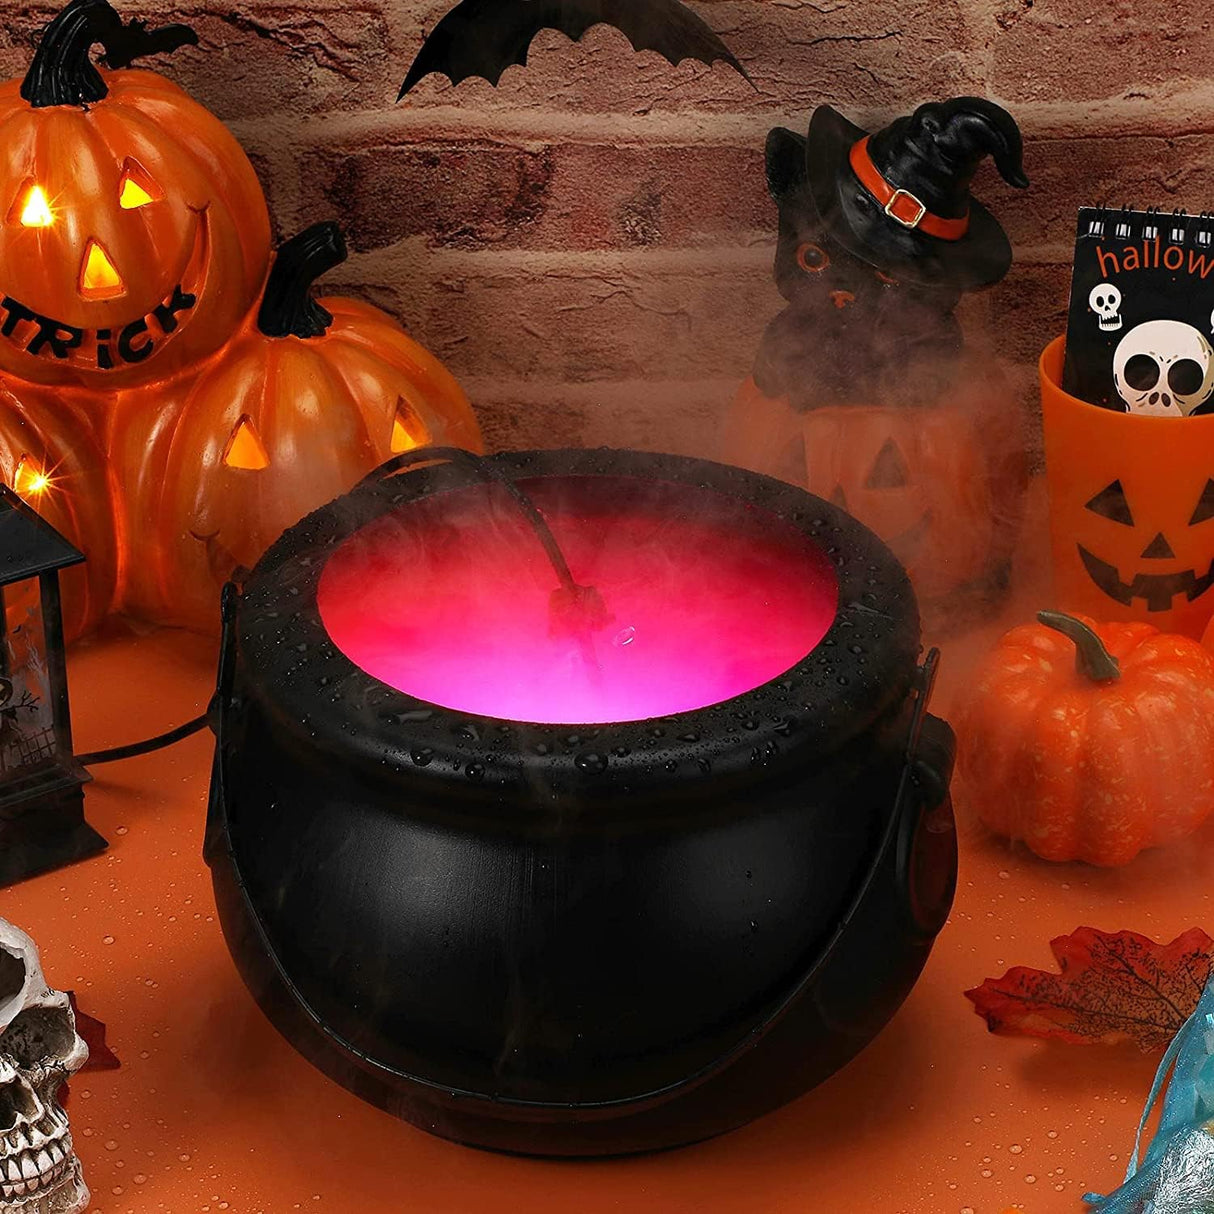 Halloween Hexenkessel Nebelmaschine  Fogger Mist Maker Sprayer Hexenkessel Rauchmaschine Mit 12 LED Farbwechselnde Halloween Atmosphären Szenenlayout Party Requisite(20 * 20 * 13 Cm)